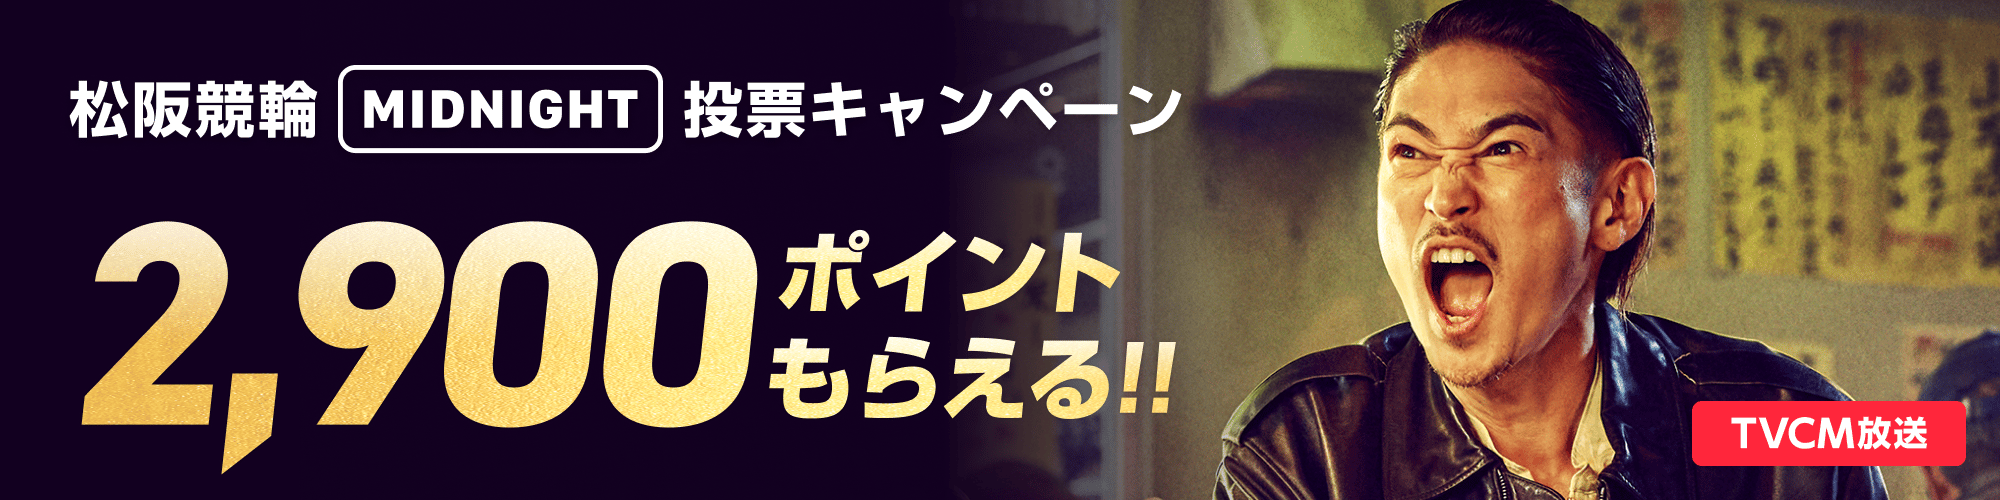 【最大2,900pt当たる!!】松阪競輪F2ミッドナイト いい肉キャンペーン